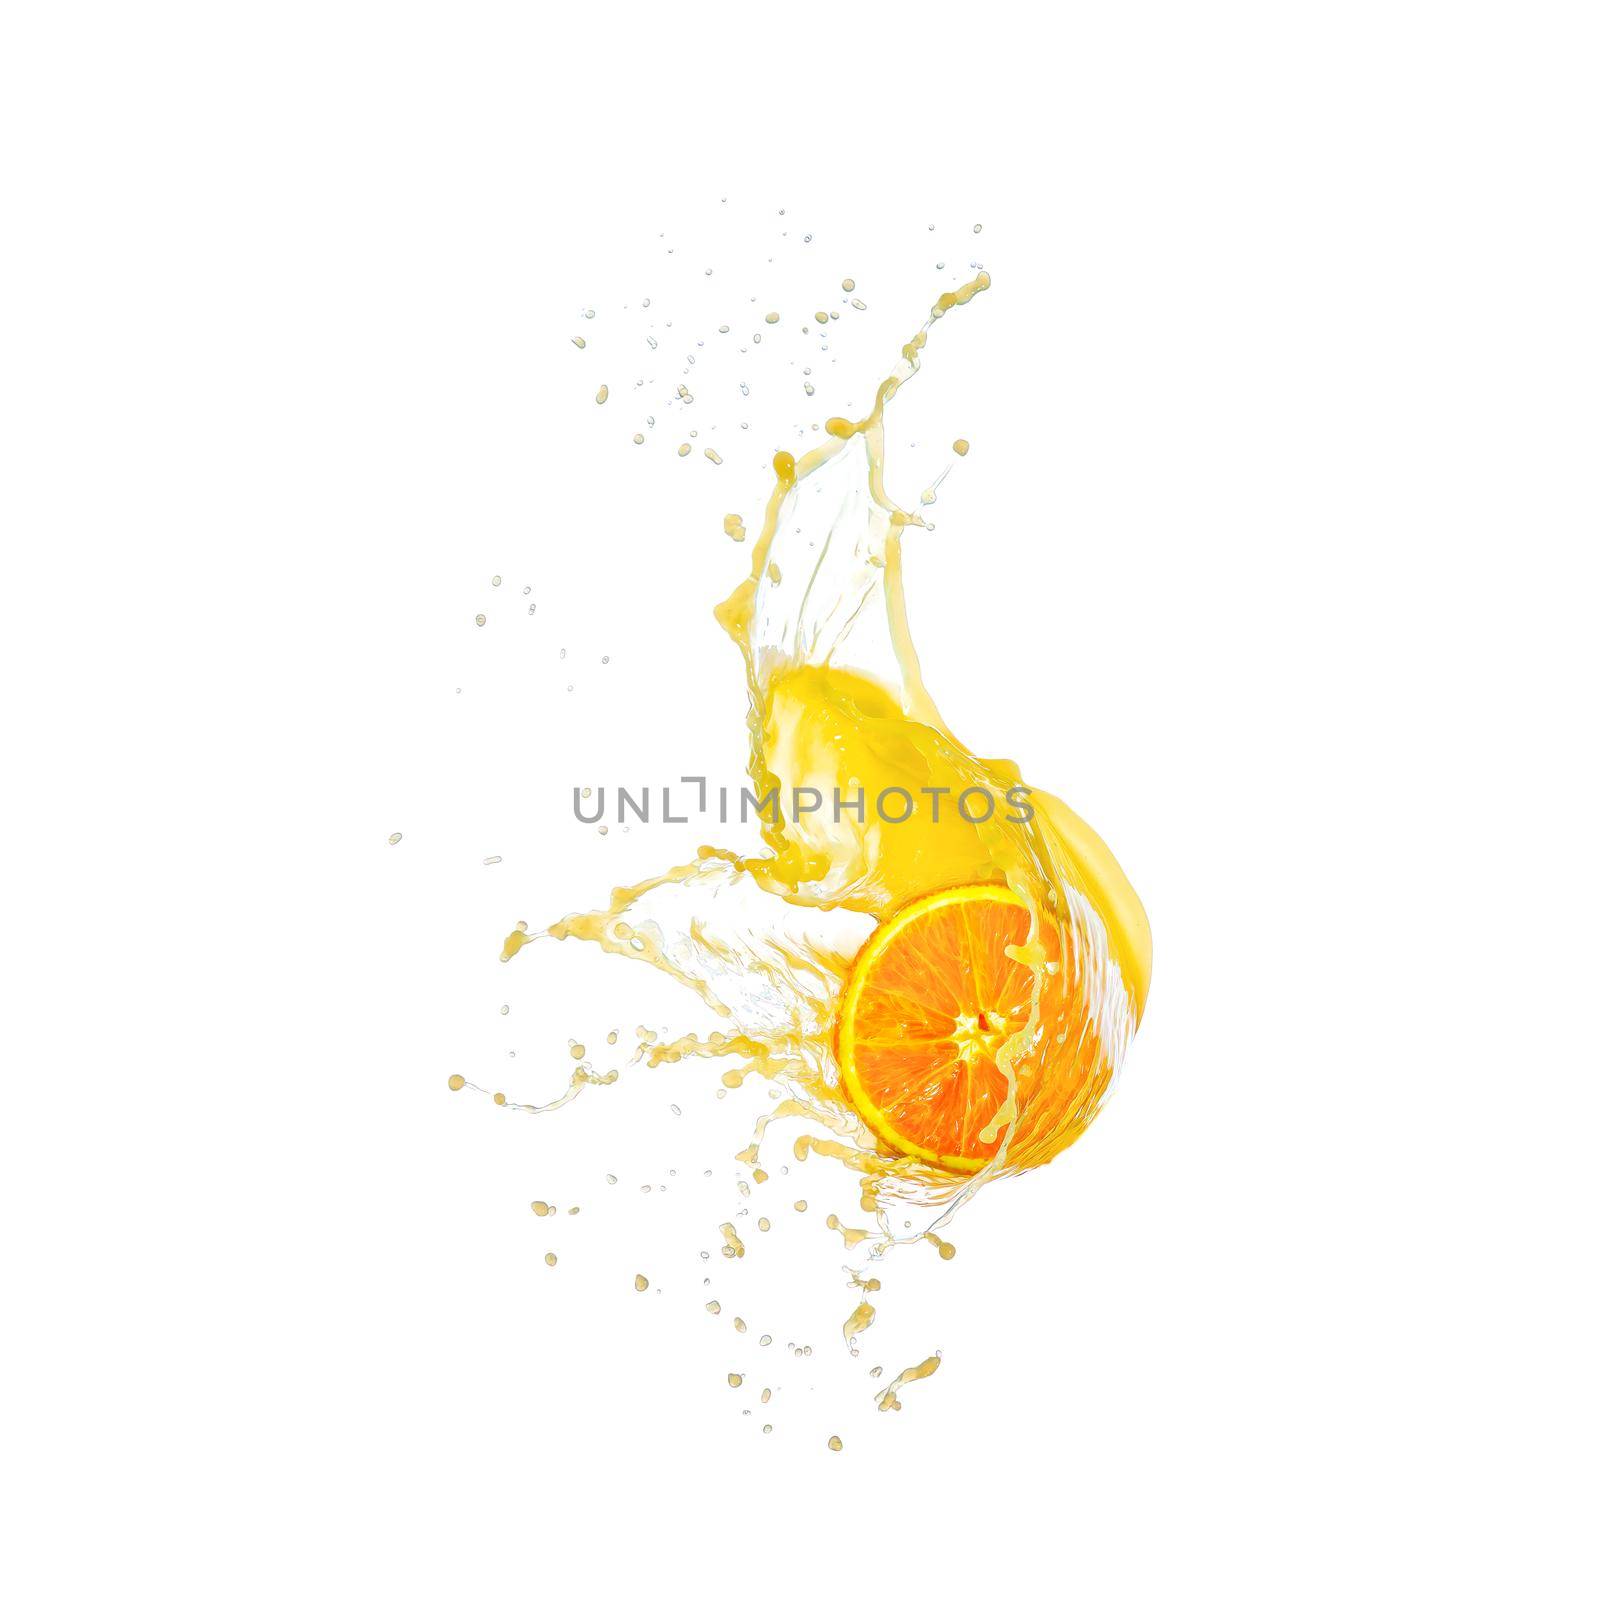 Sliced orange fruit splashing around orange juice white background. fresh juice concept